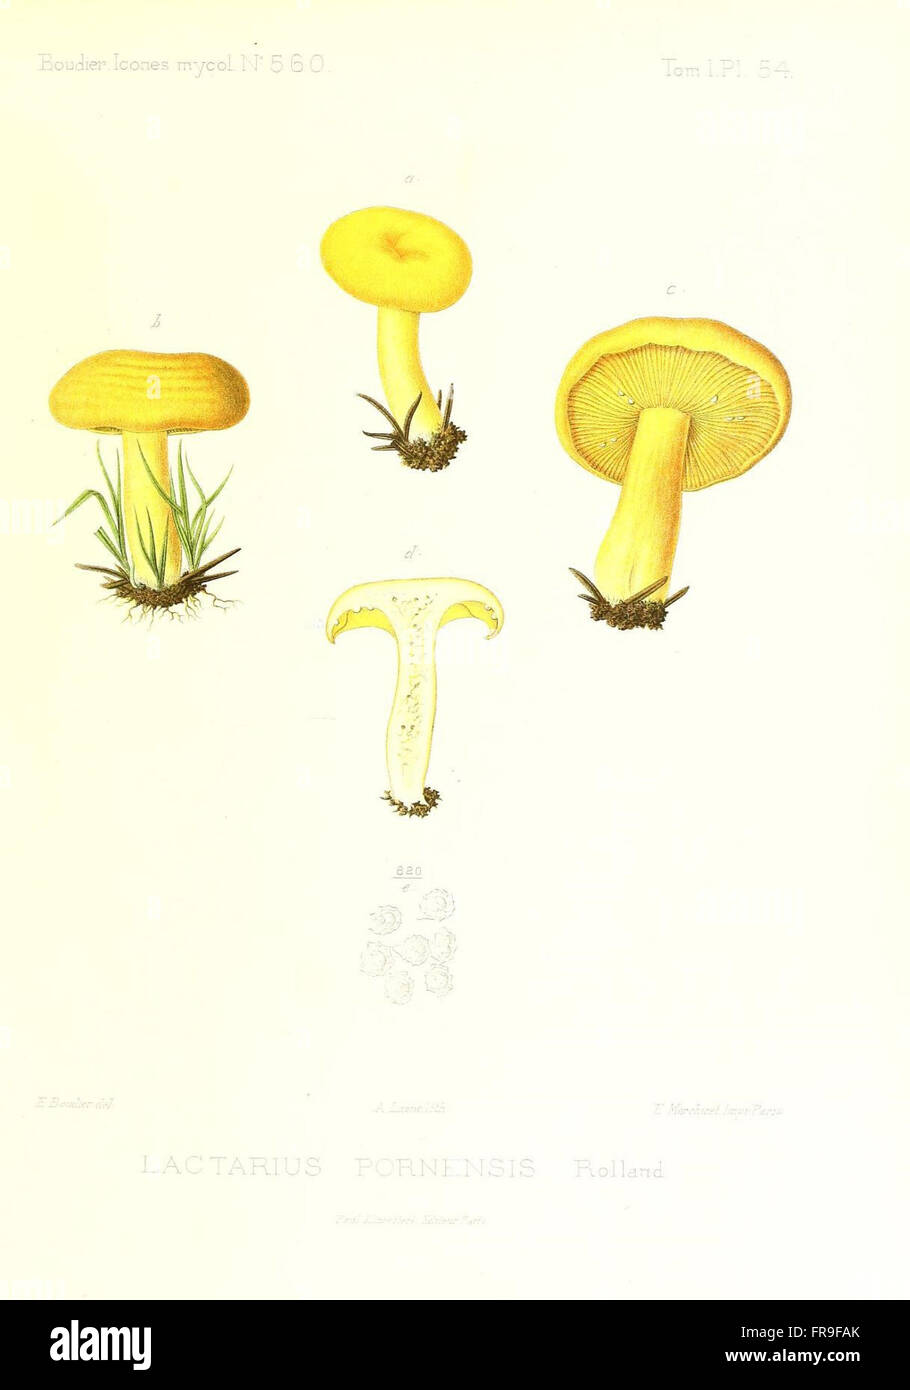 Icones mycologicC3A6, ou Iconographie des champignons de France principalement Discomycetes (Pl. 54) Stock Photo